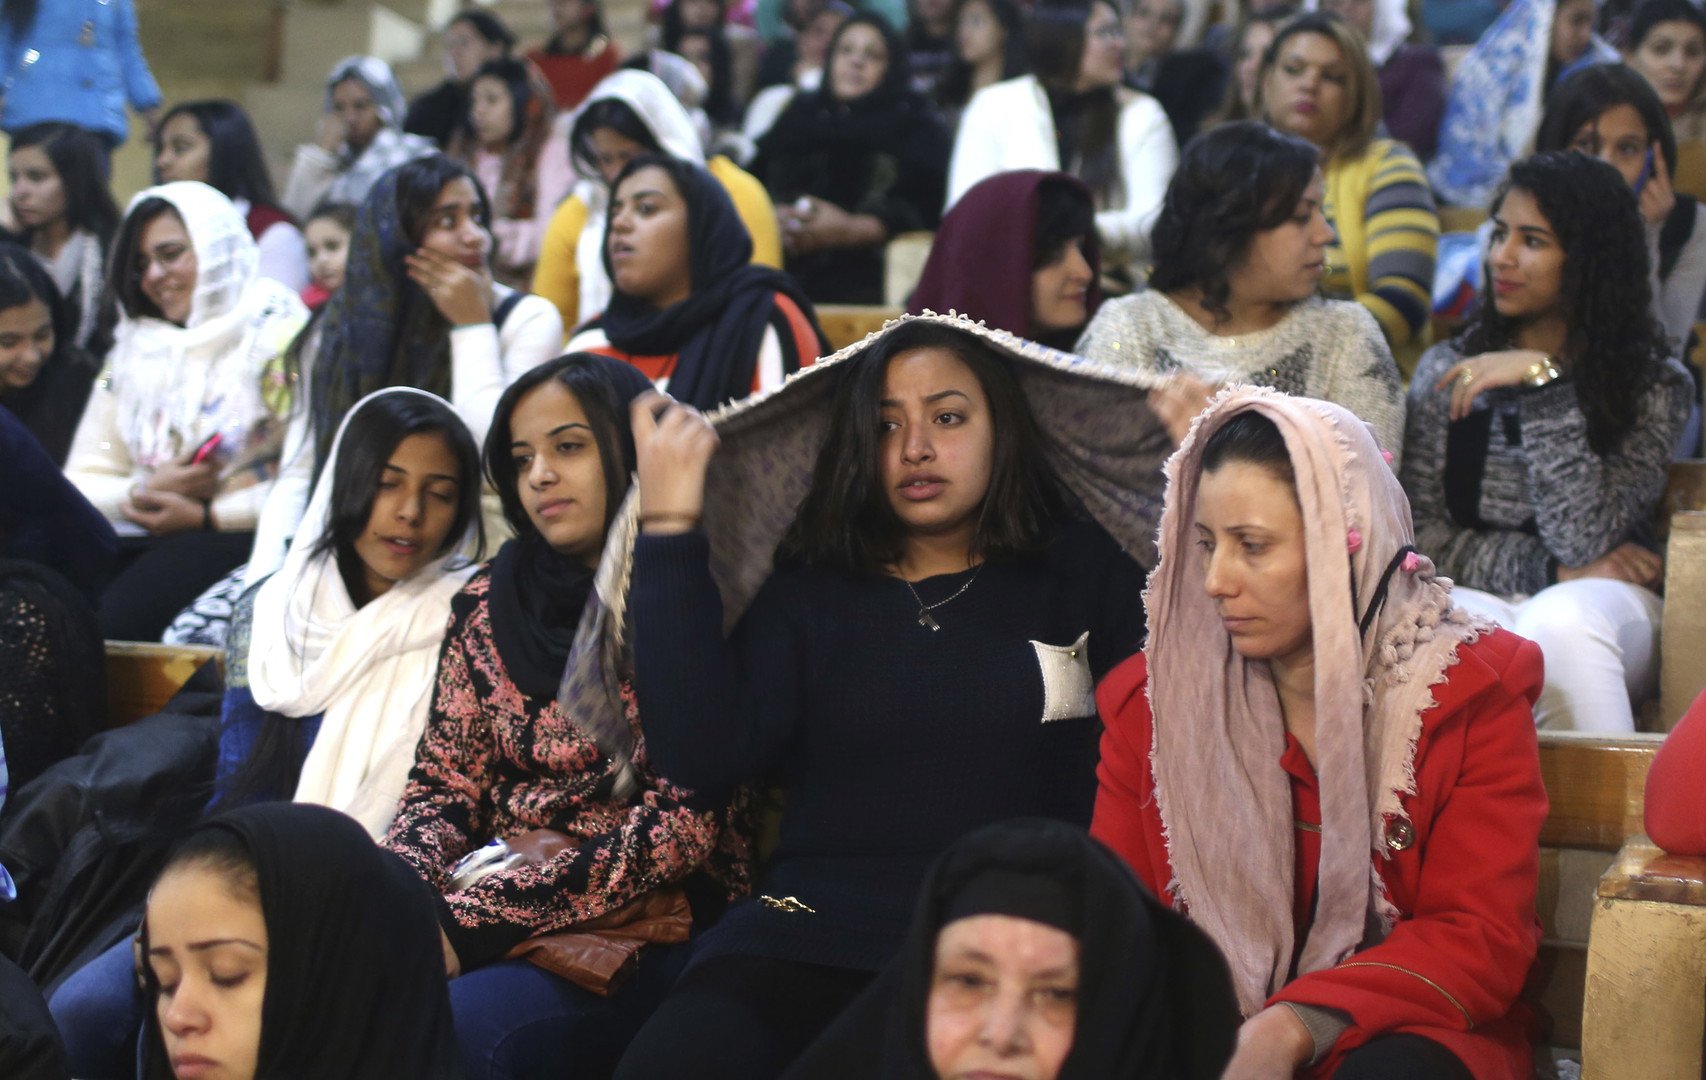 جدل ساخن بين مسيحيي مصر حول ملابس المرأة في الكنيسة (فيديو)